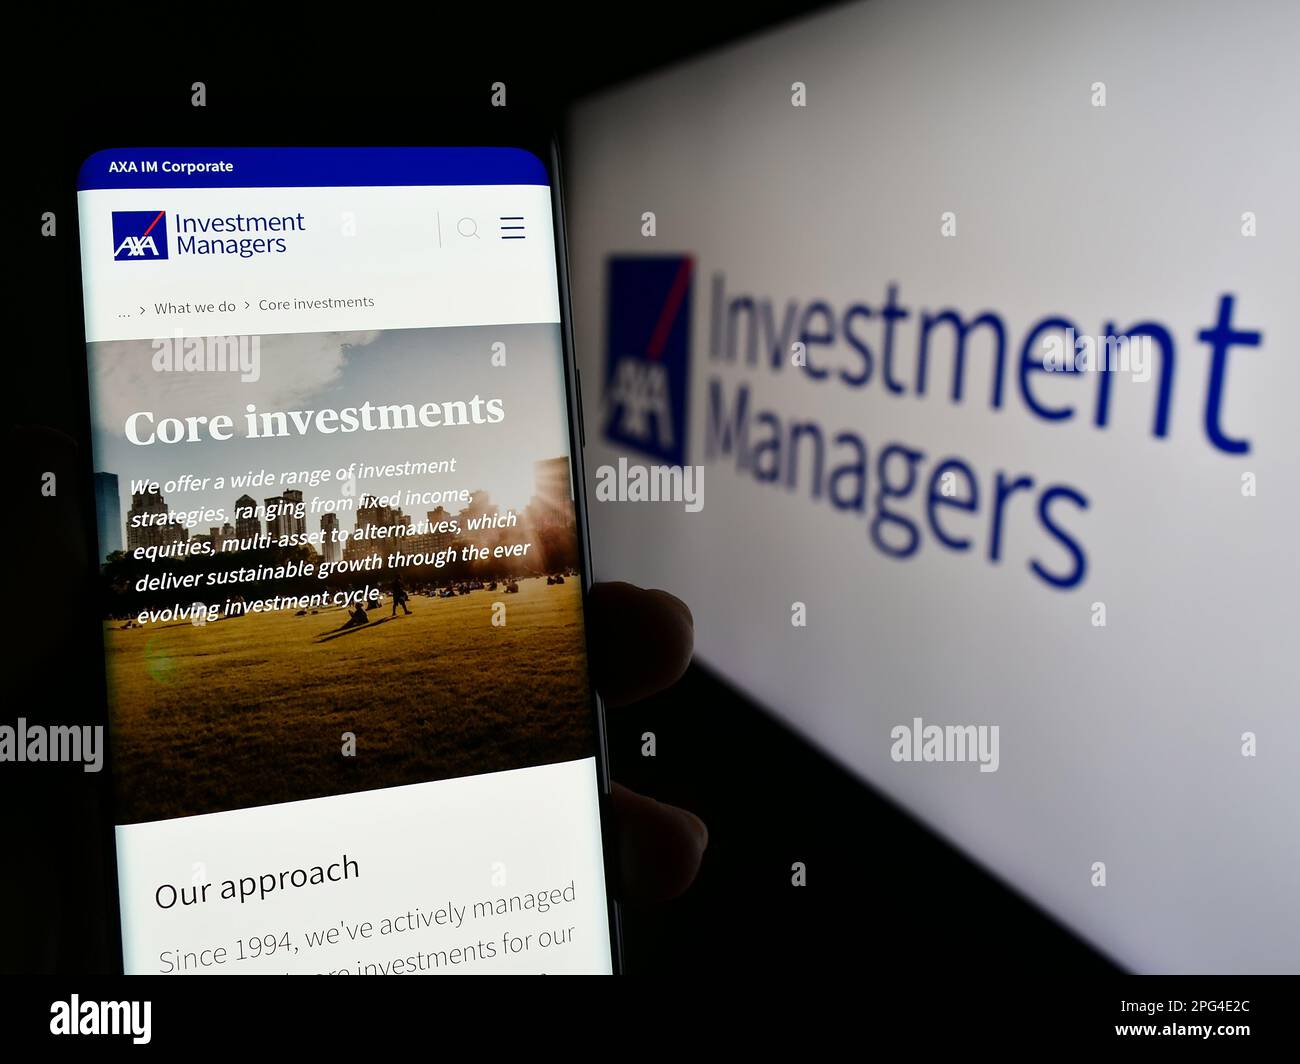 Persona che tiene uno smartphone con una pagina Web della società di investimento Axa Investment Managers sullo schermo con il logo. Messa a fuoco al centro del display del telefono. Foto Stock